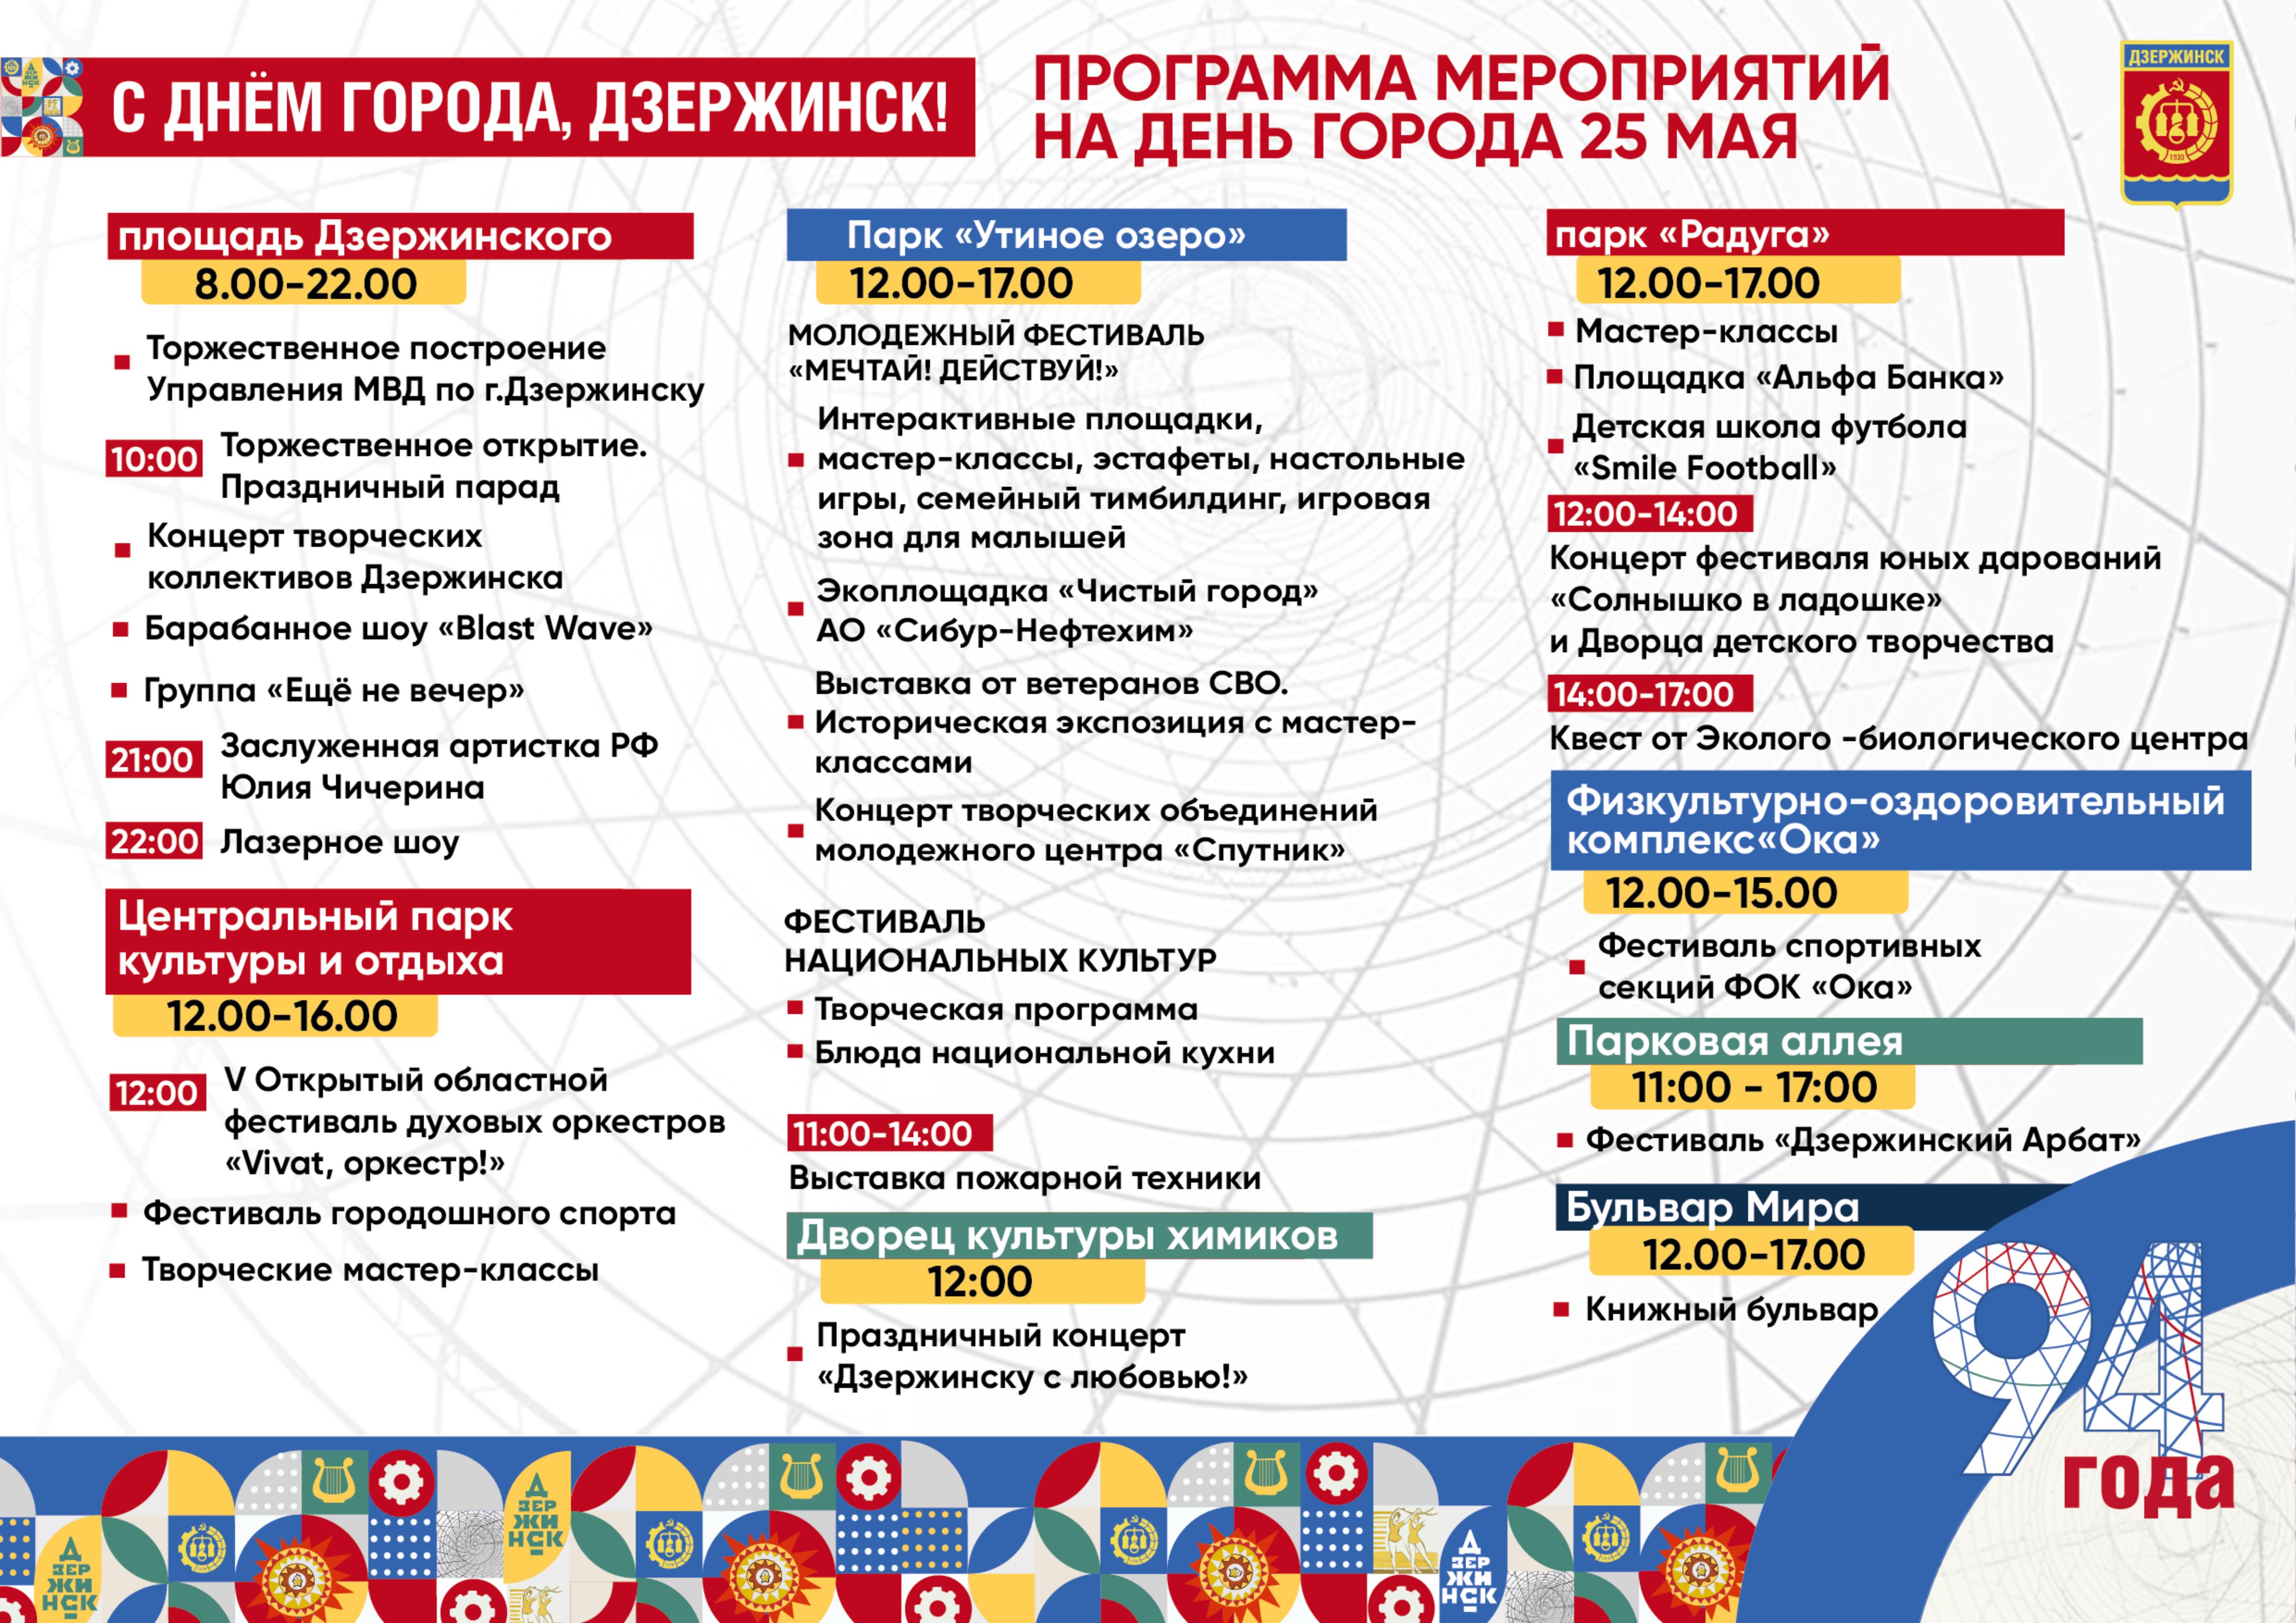 Программа празднования Дня города в Дзержинске